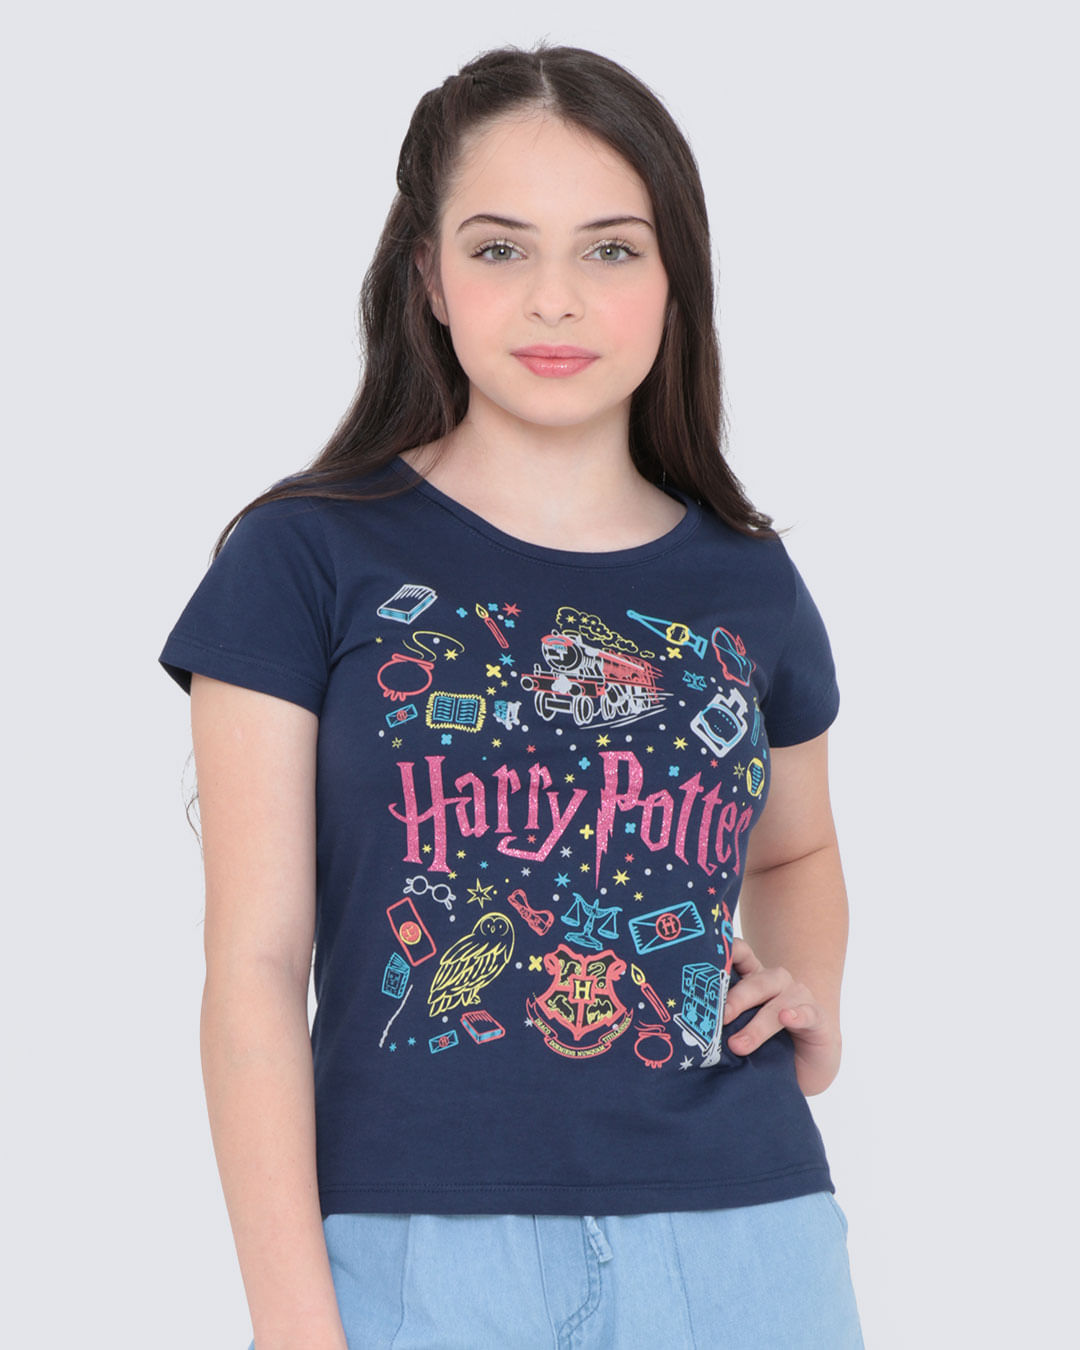 Blusa-Juvenil-Harry-Potter-Warner-Azul-Marinho